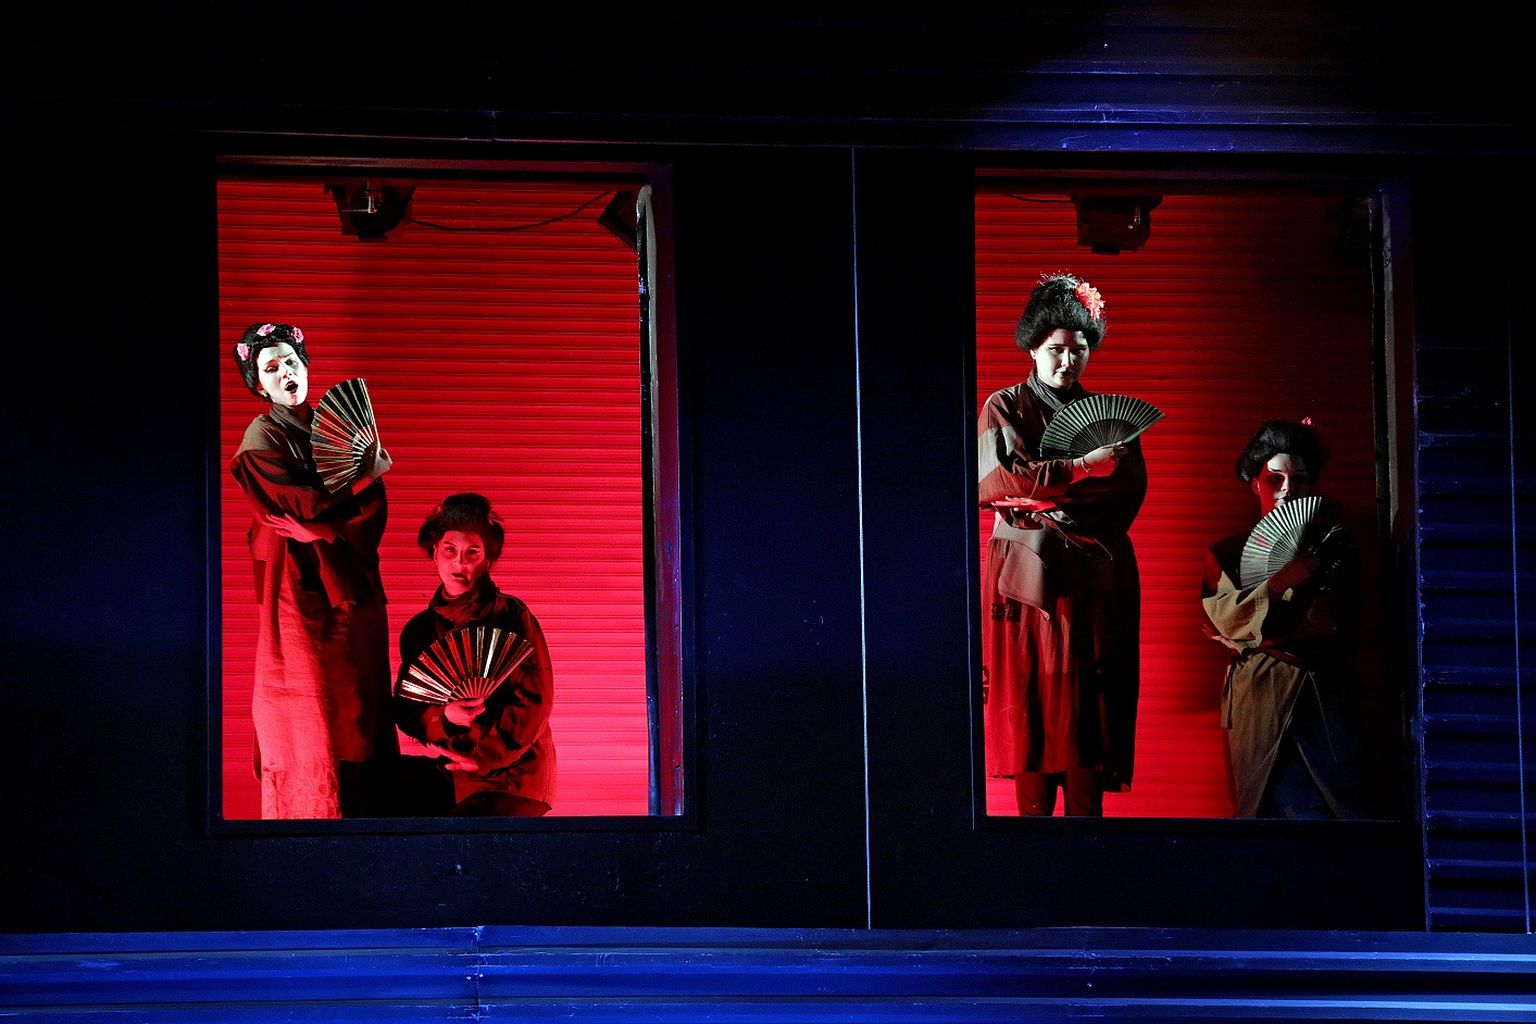 Rahvusvaheliselt mainekas Peterburi Kammerooper toob Saaremaa ooperipäevadele neli lavastust, nende seas ka Giacomo Puccini armastatud „Madama Butterfly“.